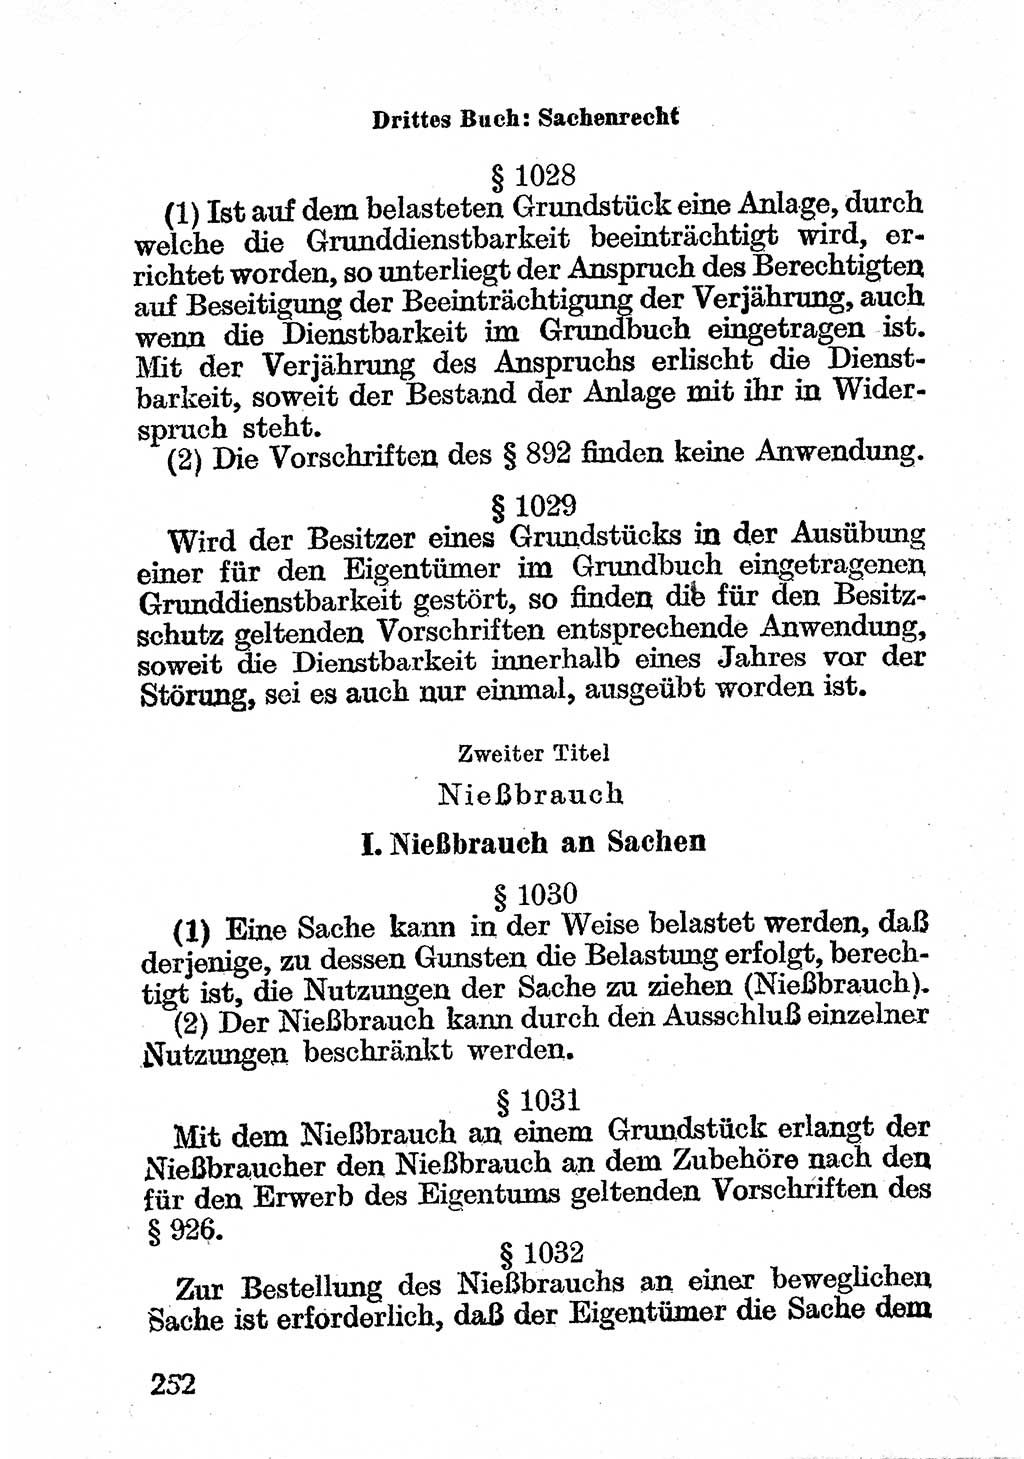 Bürgerliches Gesetzbuch (BGB) nebst wichtigen Nebengesetzen [Deutsche Demokratische Republik (DDR)] 1956, Seite 252 (BGB Nebenges. DDR 1956, S. 252)